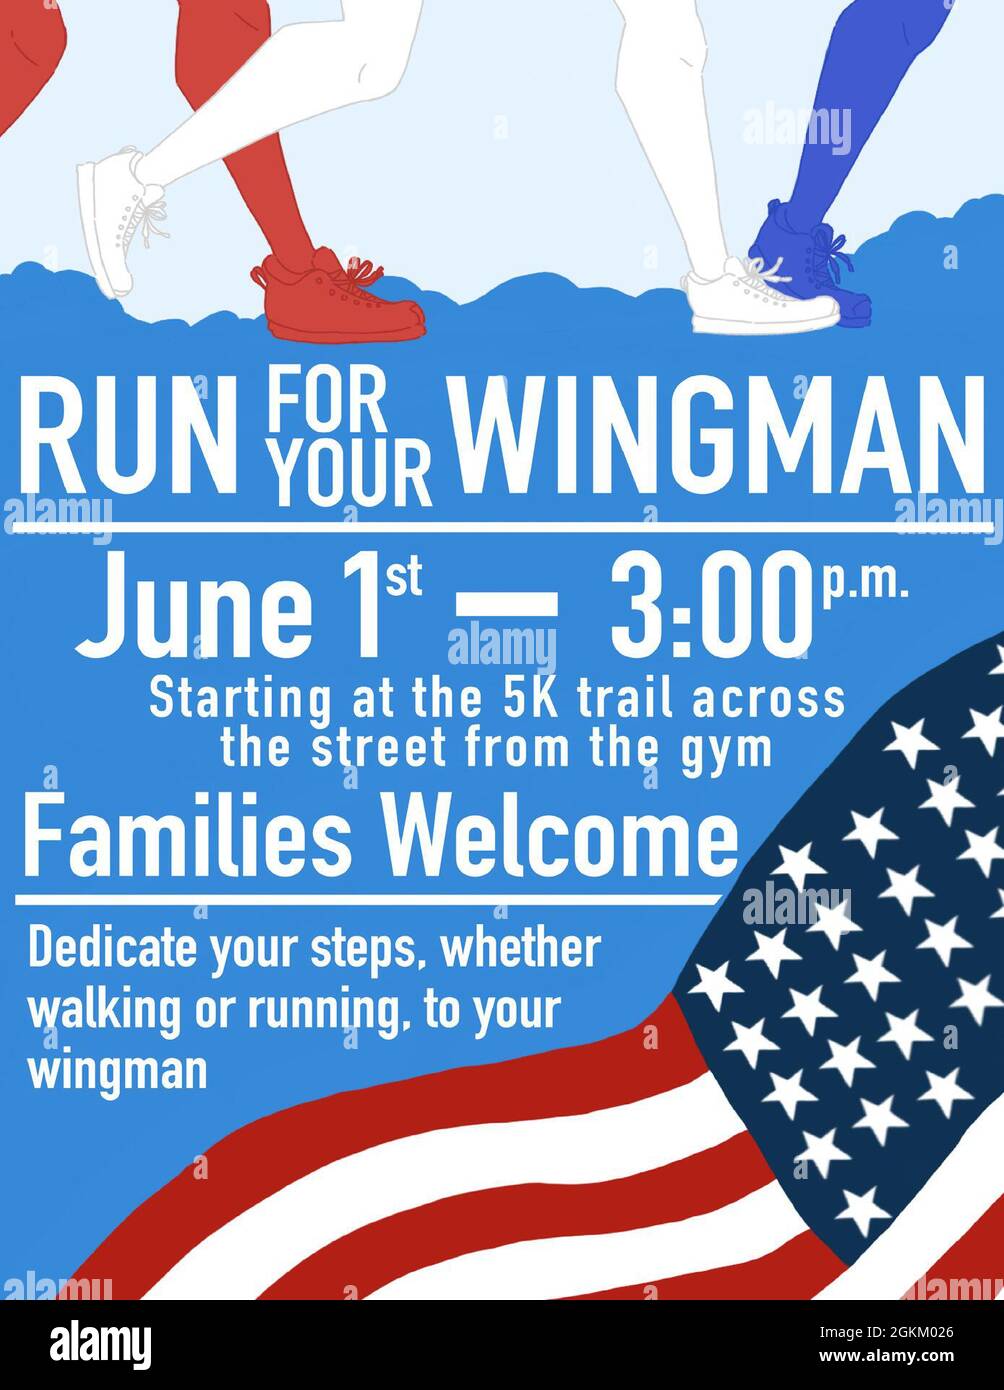 Das „Run for Your Wingman“-Poster wurde für eine Veranstaltung auf dem Luftwaffenstützpunkt Grand Forks, N.D., angefertigt Das Event war ein Lauf, bei dem Airman für einen Grund ihrer Wahl laufen oder laufen konnte. Stockfoto